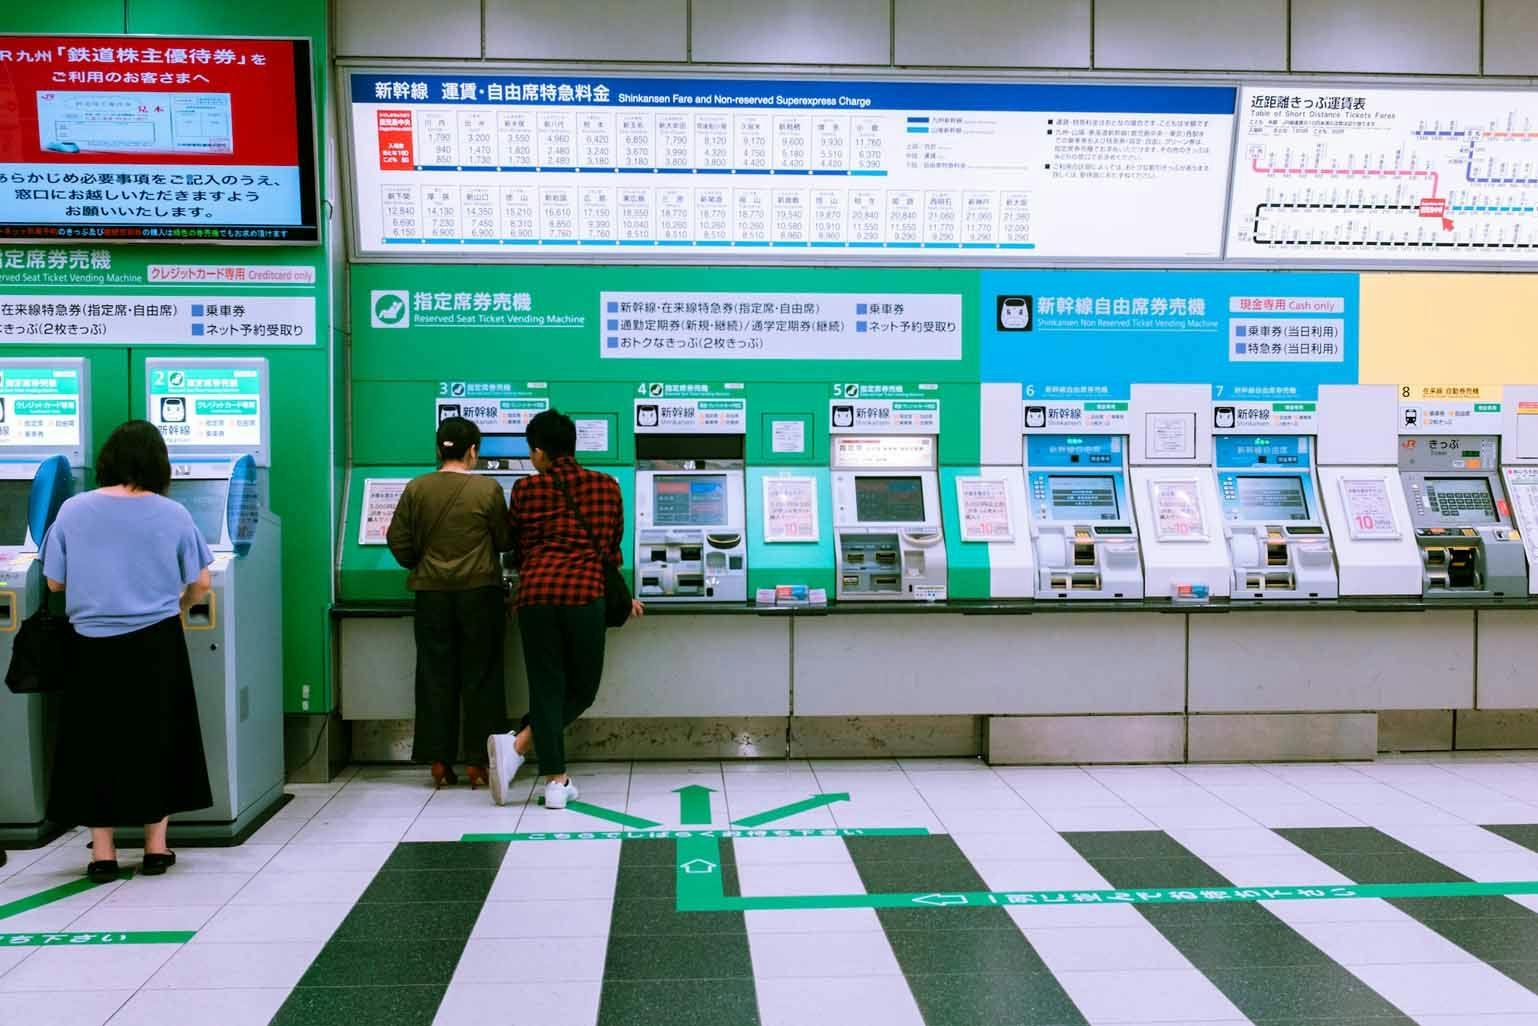 Japan Rail ticket gates